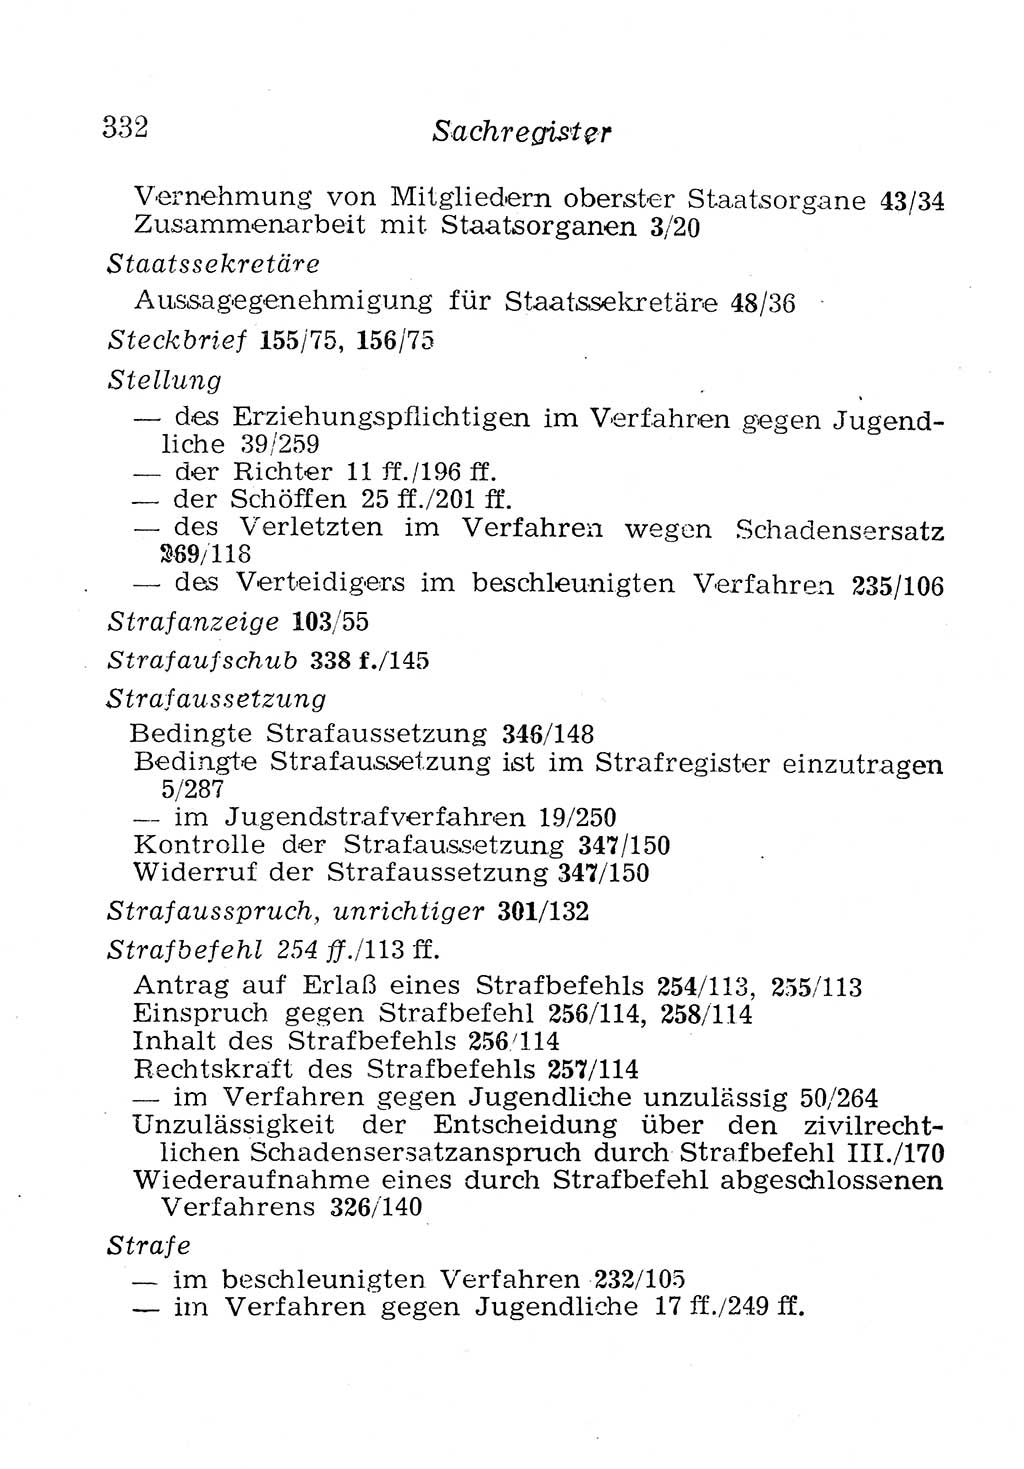 Strafprozeßordnung (StPO), Gerichtsverfassungsgesetz (GVG), Staatsanwaltsgesetz (StAG), Jugendgerichtsgesetz (JGG) und Strafregistergesetz (StRegG) [Deutsche Demokratische Republik (DDR)] 1958, Seite 332 (StPO GVG StAG JGG StRegG DDR 1958, S. 332)